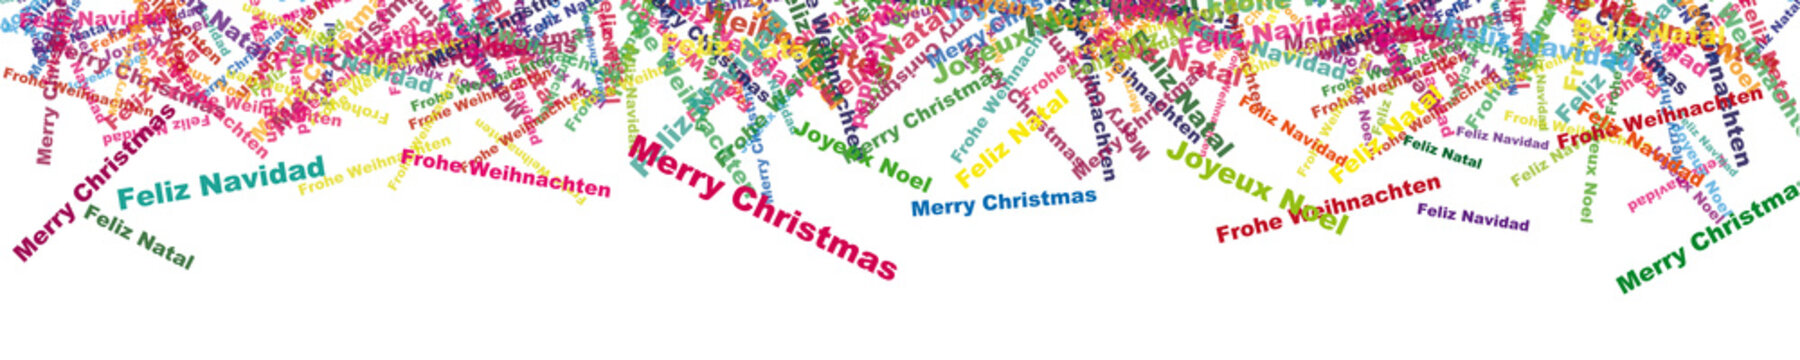 Merry Christmas, Feliz Navidad,Joyeux Noel,Feliz Natal,Frohe Weihnachten, Abstract colorful banner design